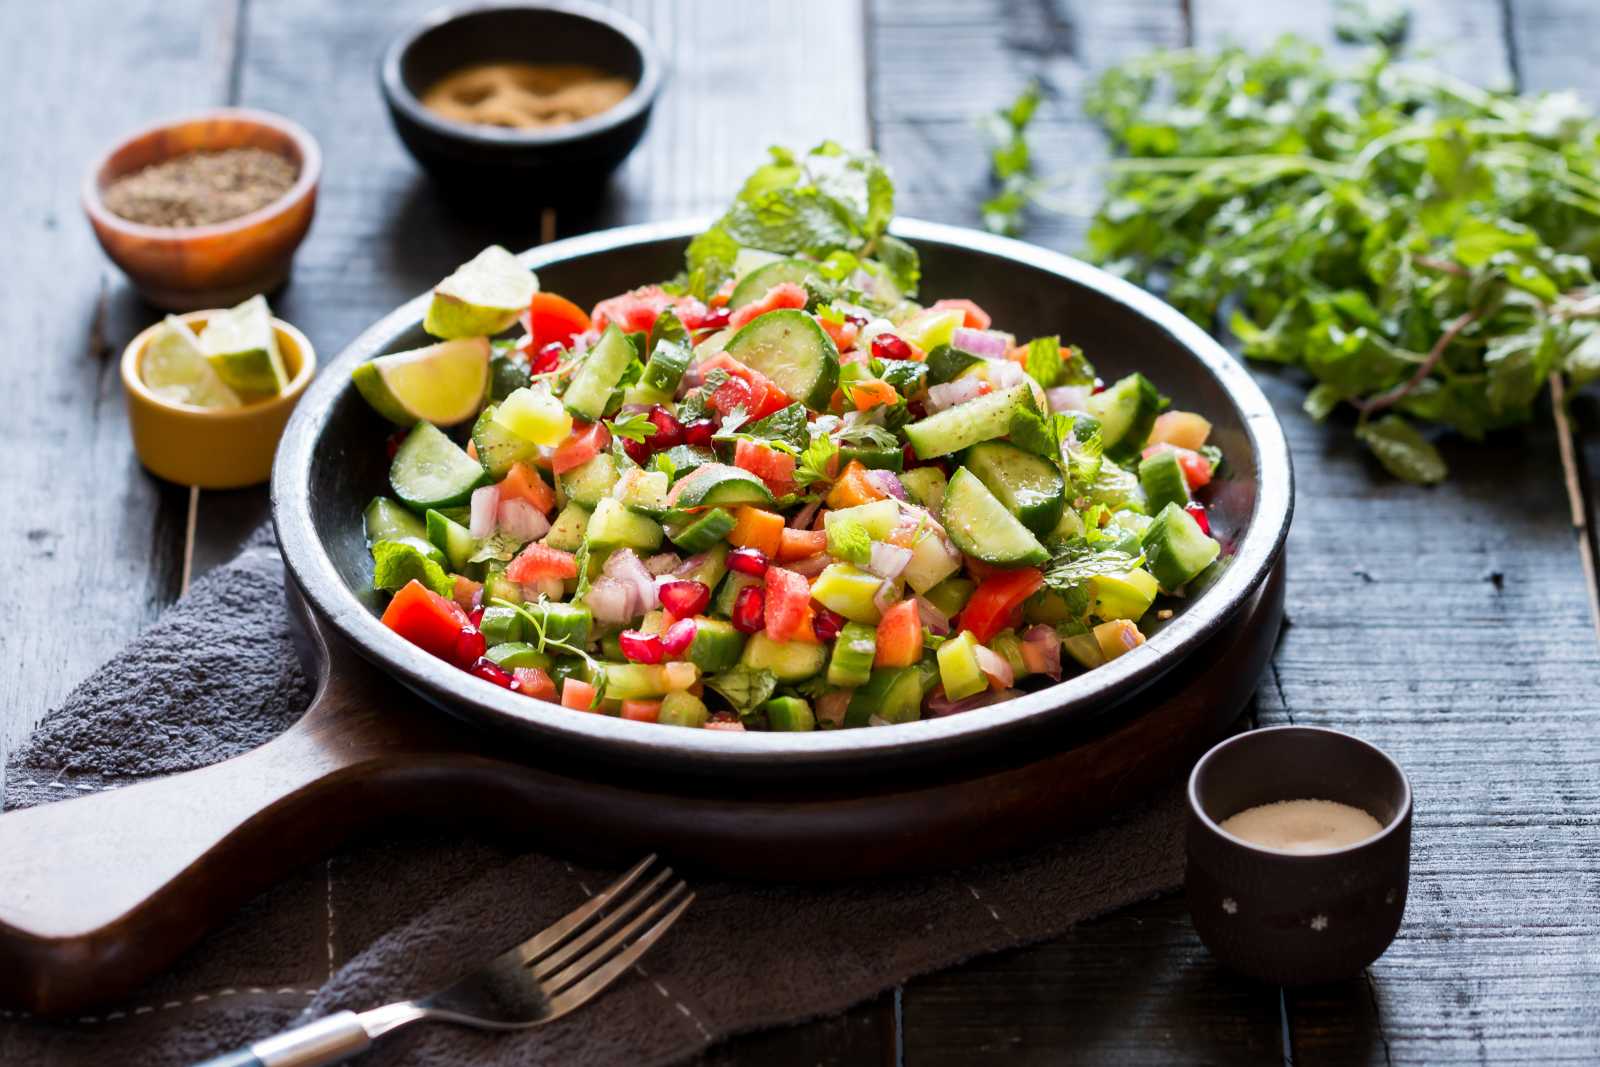 कचुम्बर सलाद रेसिपी - Kachumber Salad Recipe